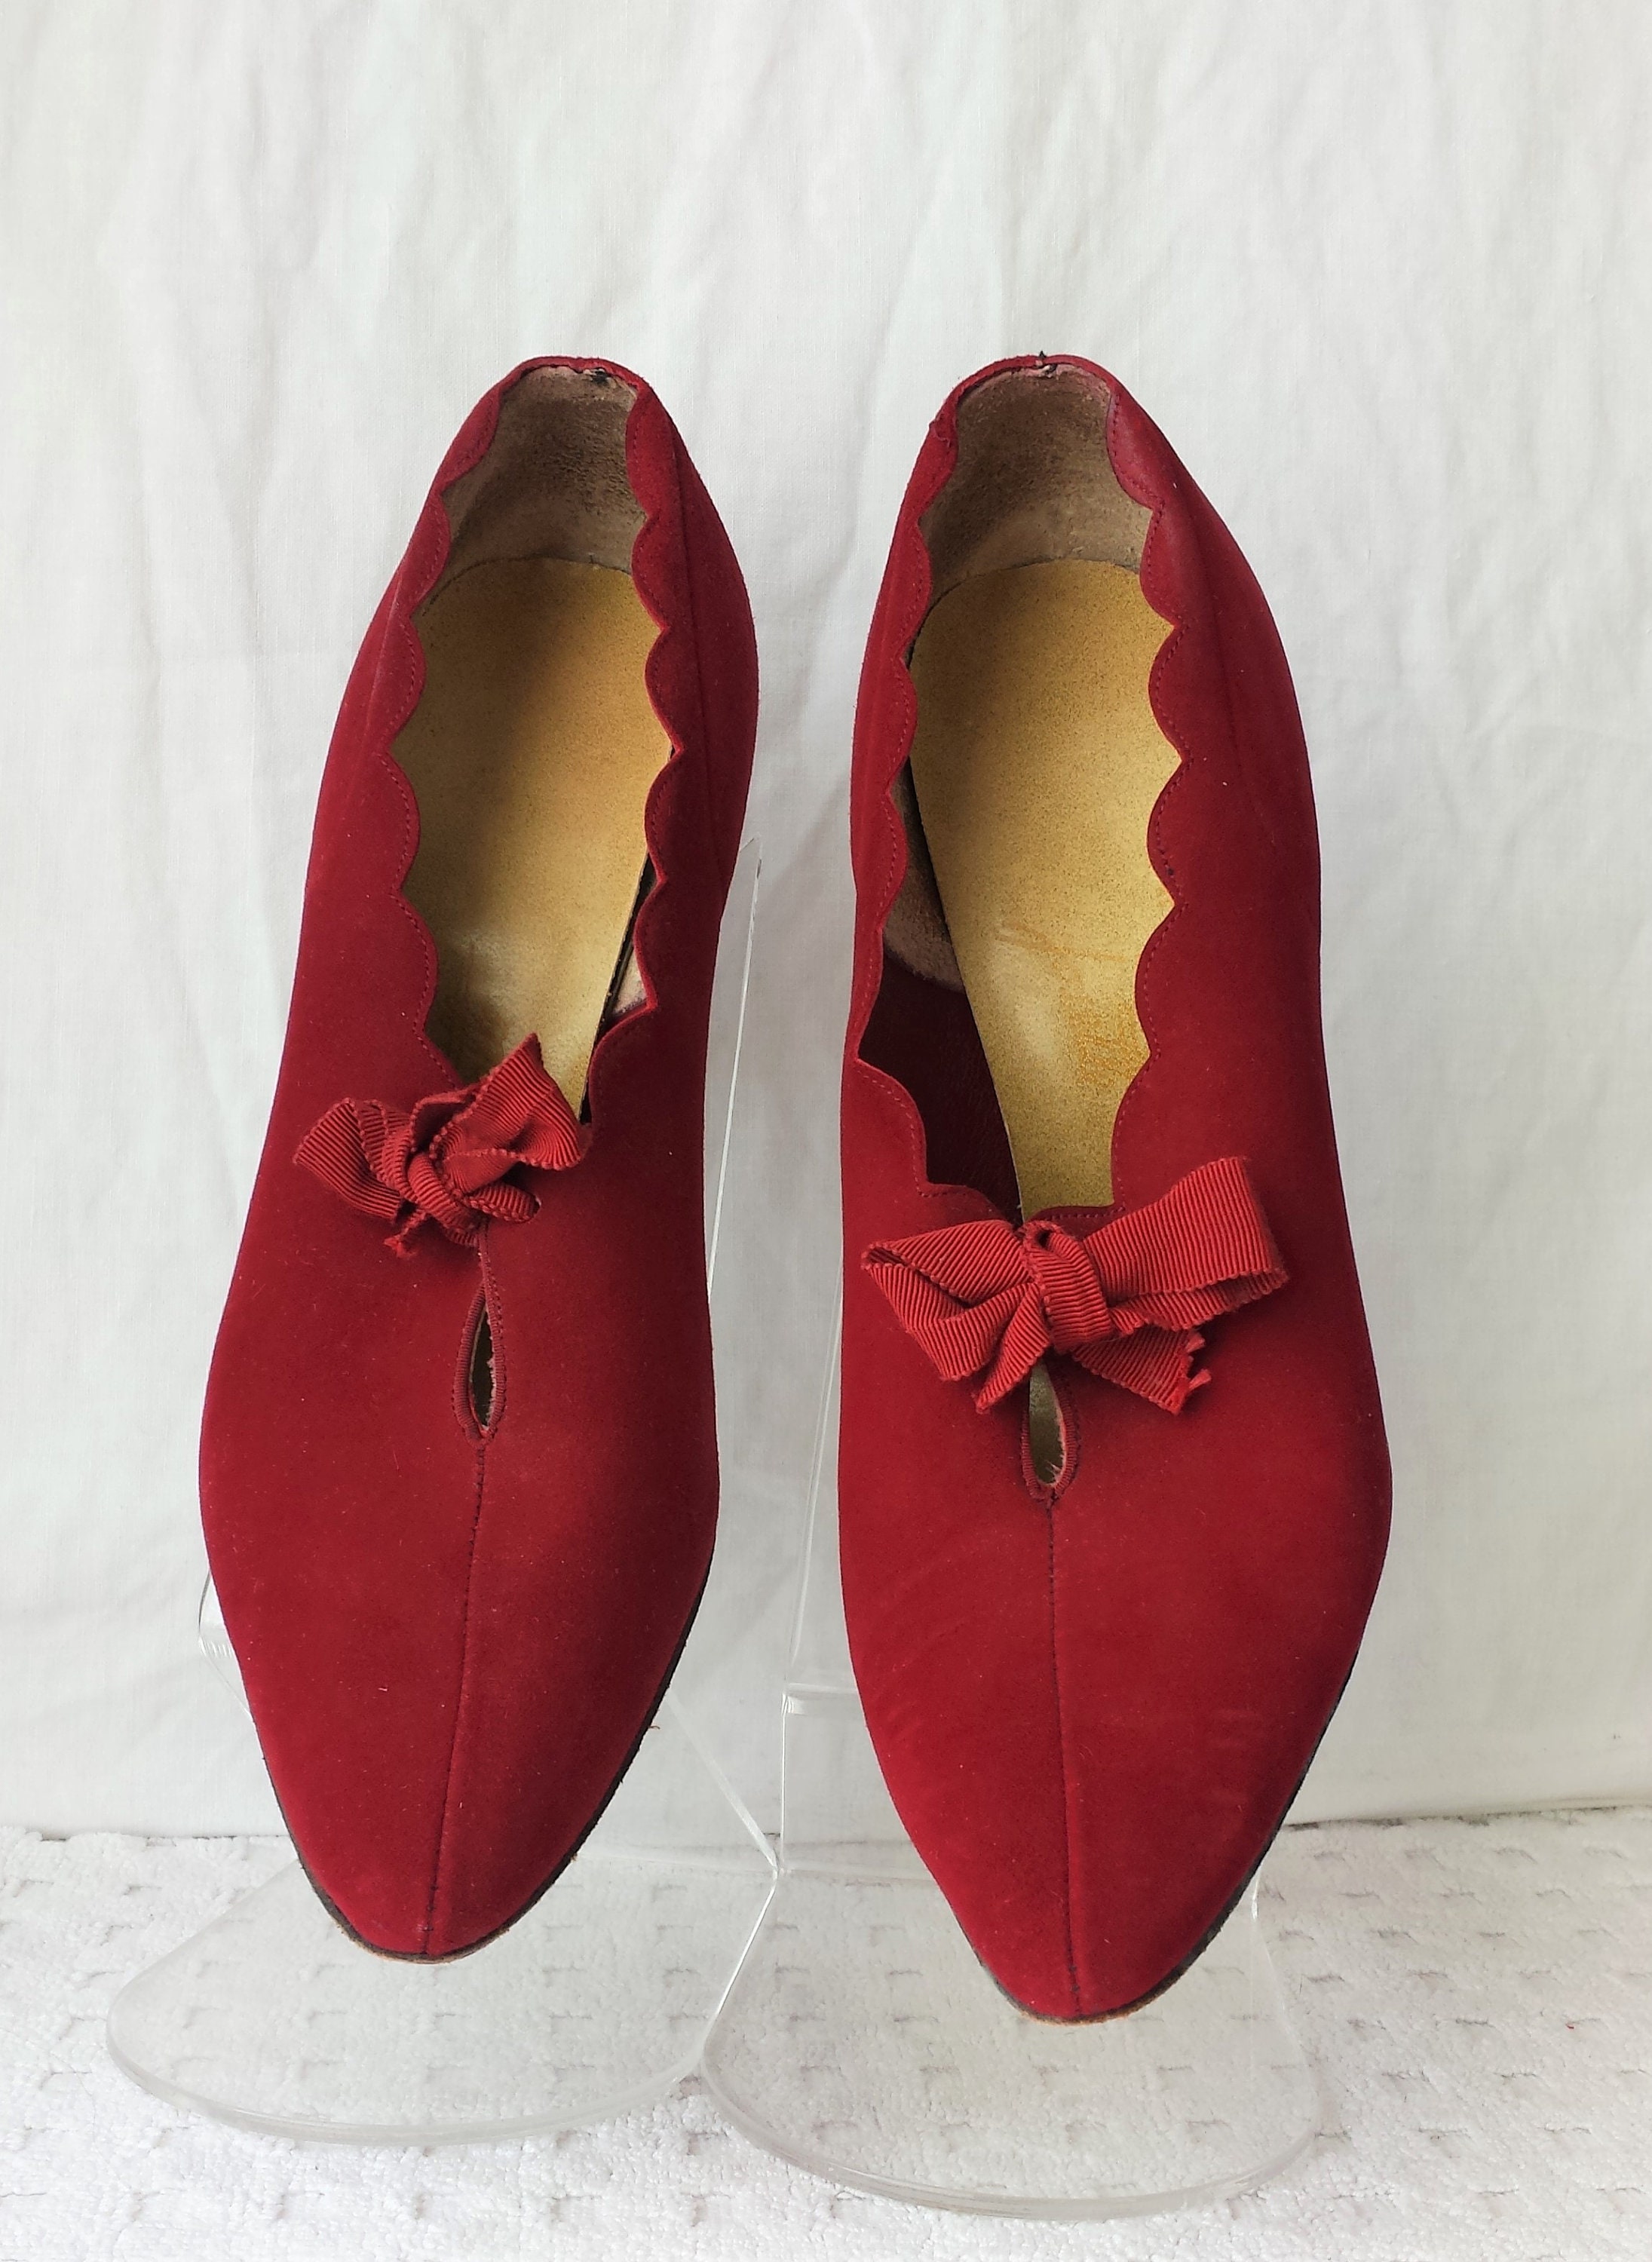 Wine Suede Shoes 1950's Scallop Edge Josette Kitten Heels | Etsy